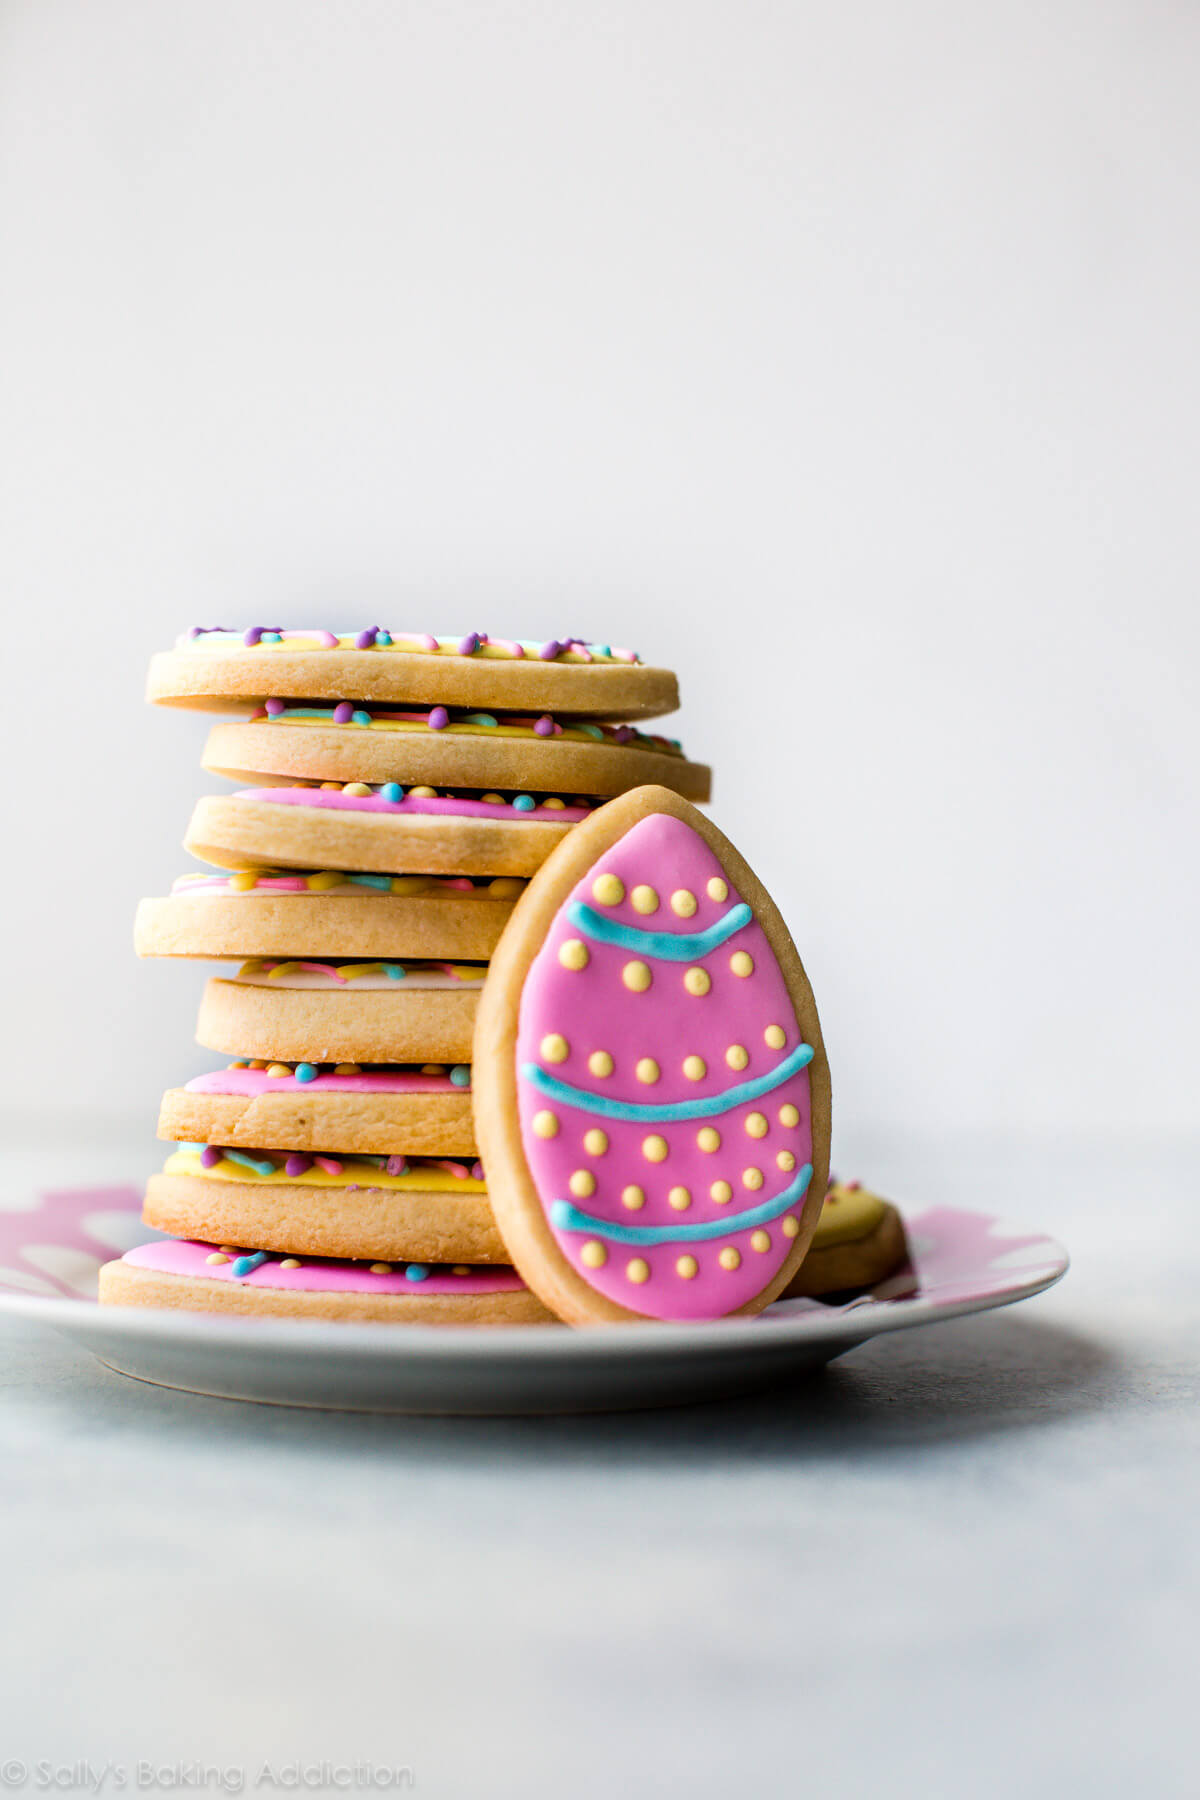 Comment faire des biscuits au sucre d'oeuf de Pâques décorés! Recette sur sallysbakingaddiction.com